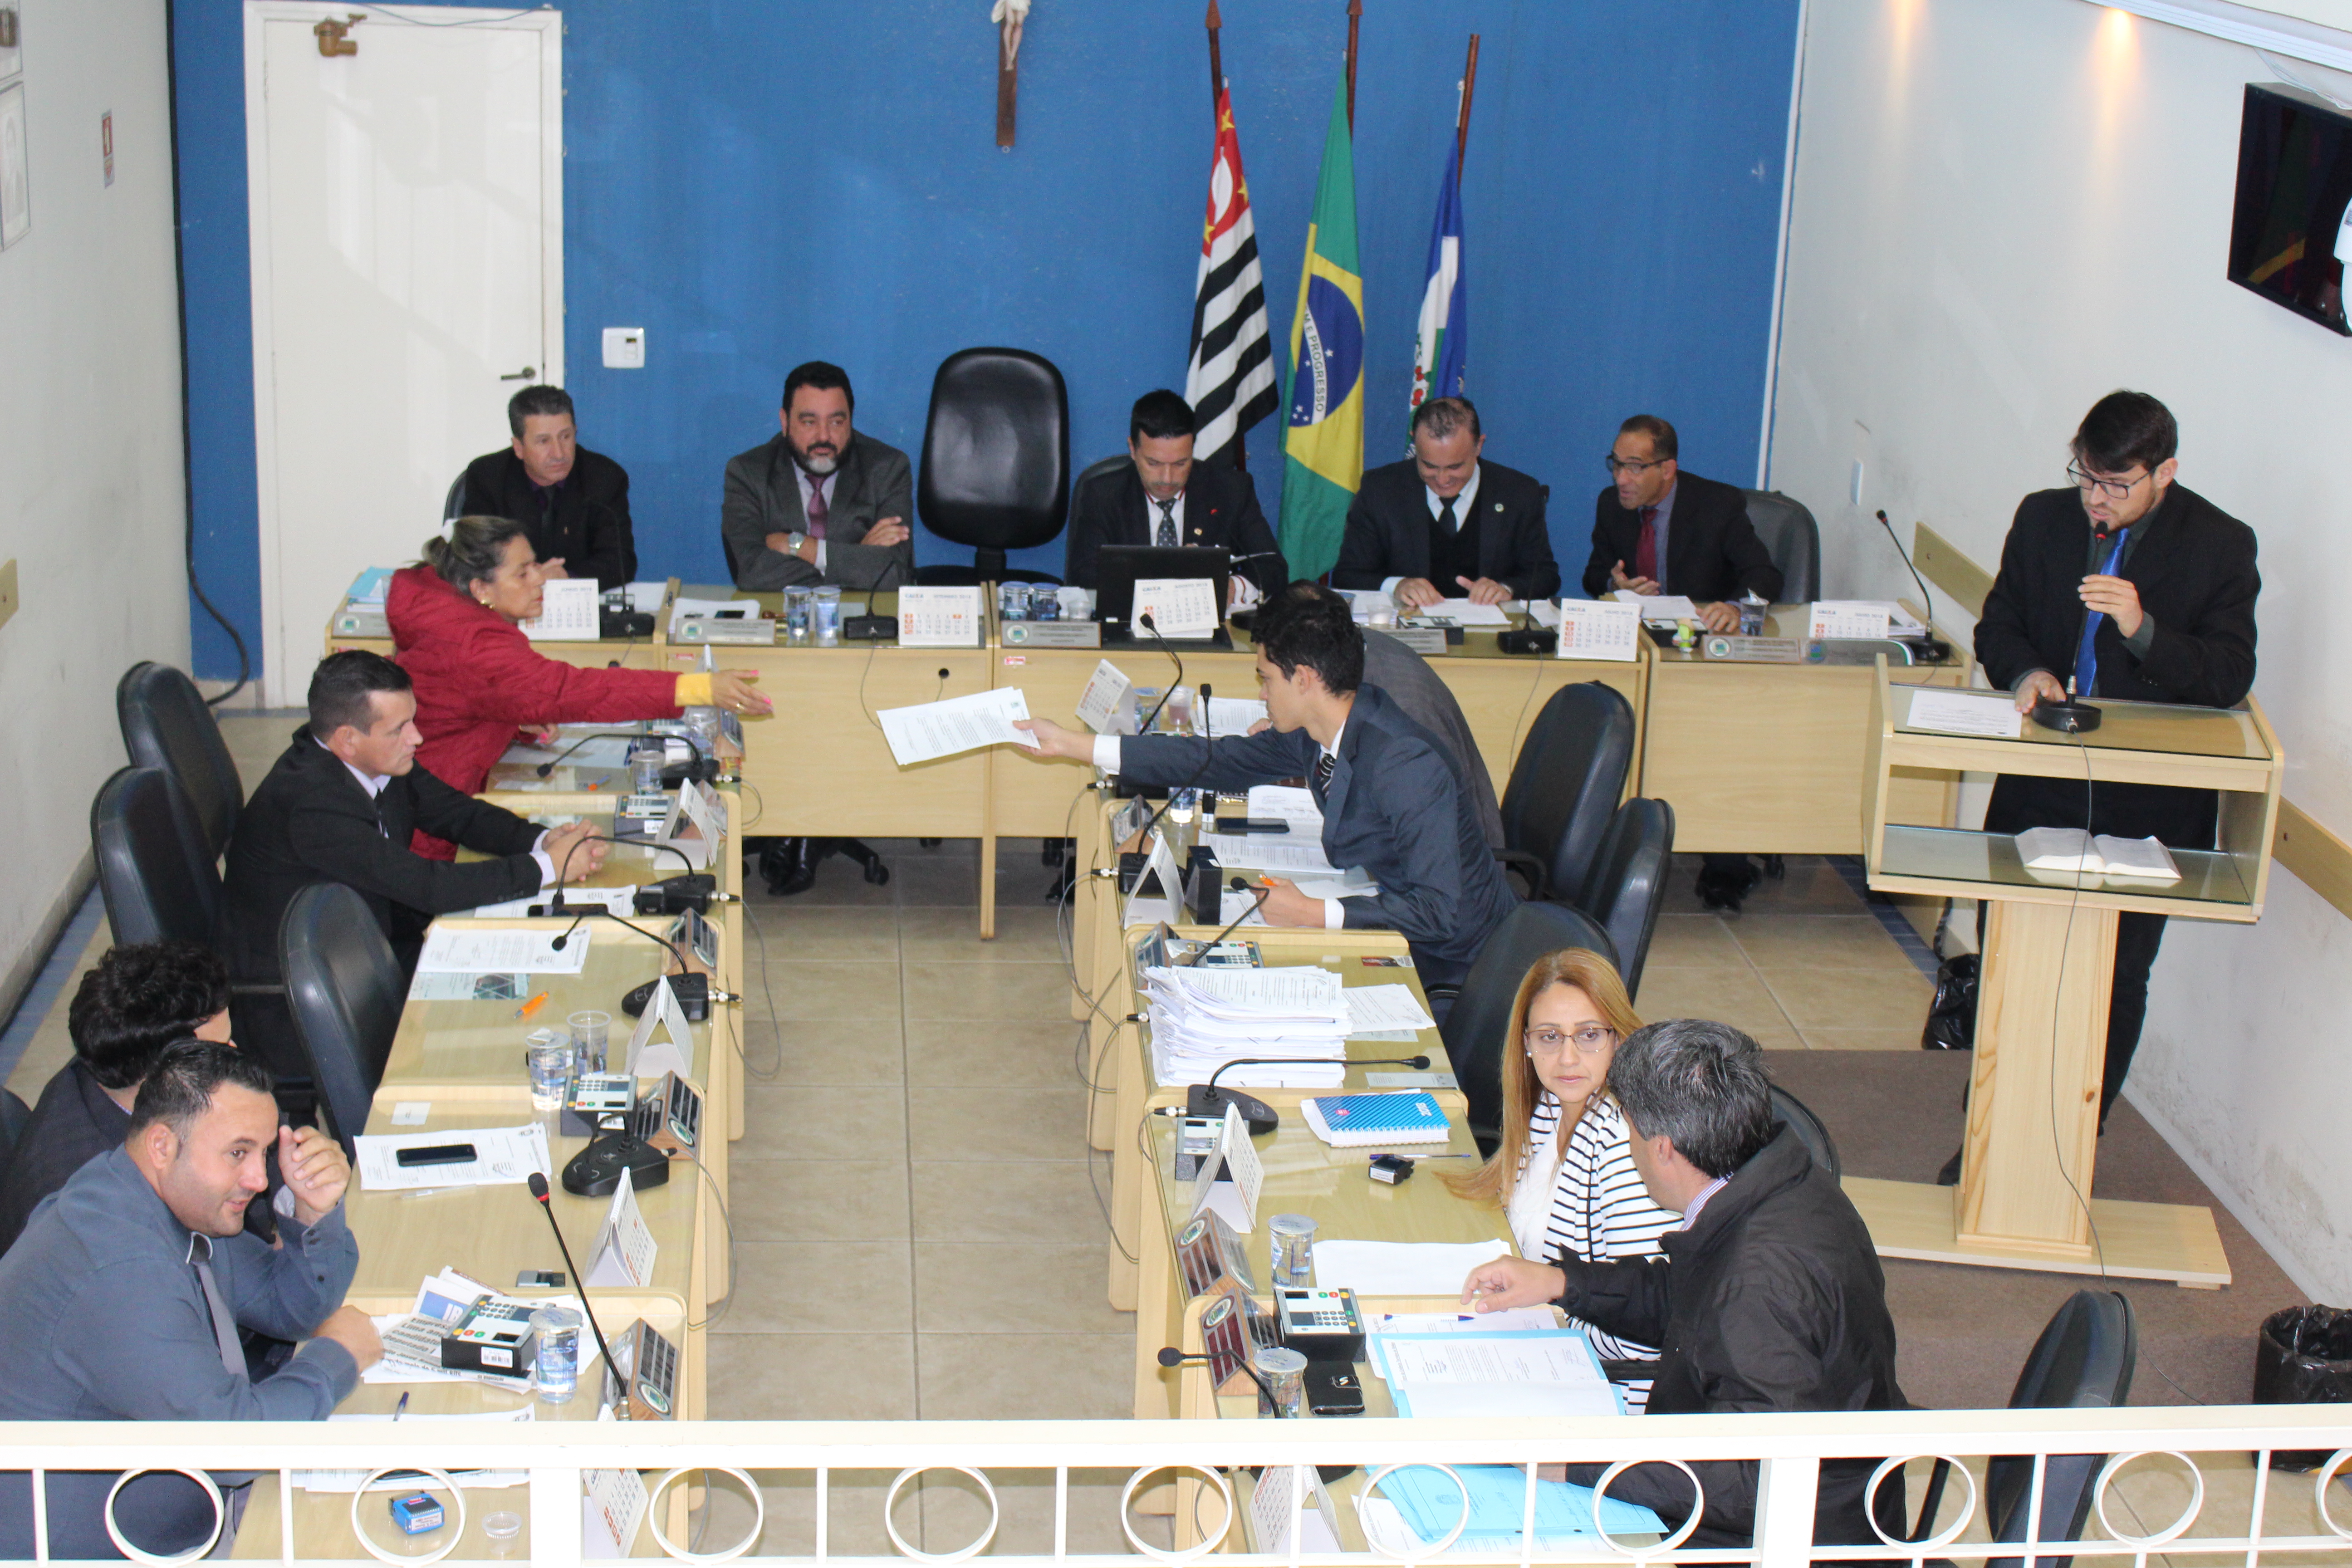 Acompanhe como foi a sessão desta semana na Câmara Municipal de Ibiúna 